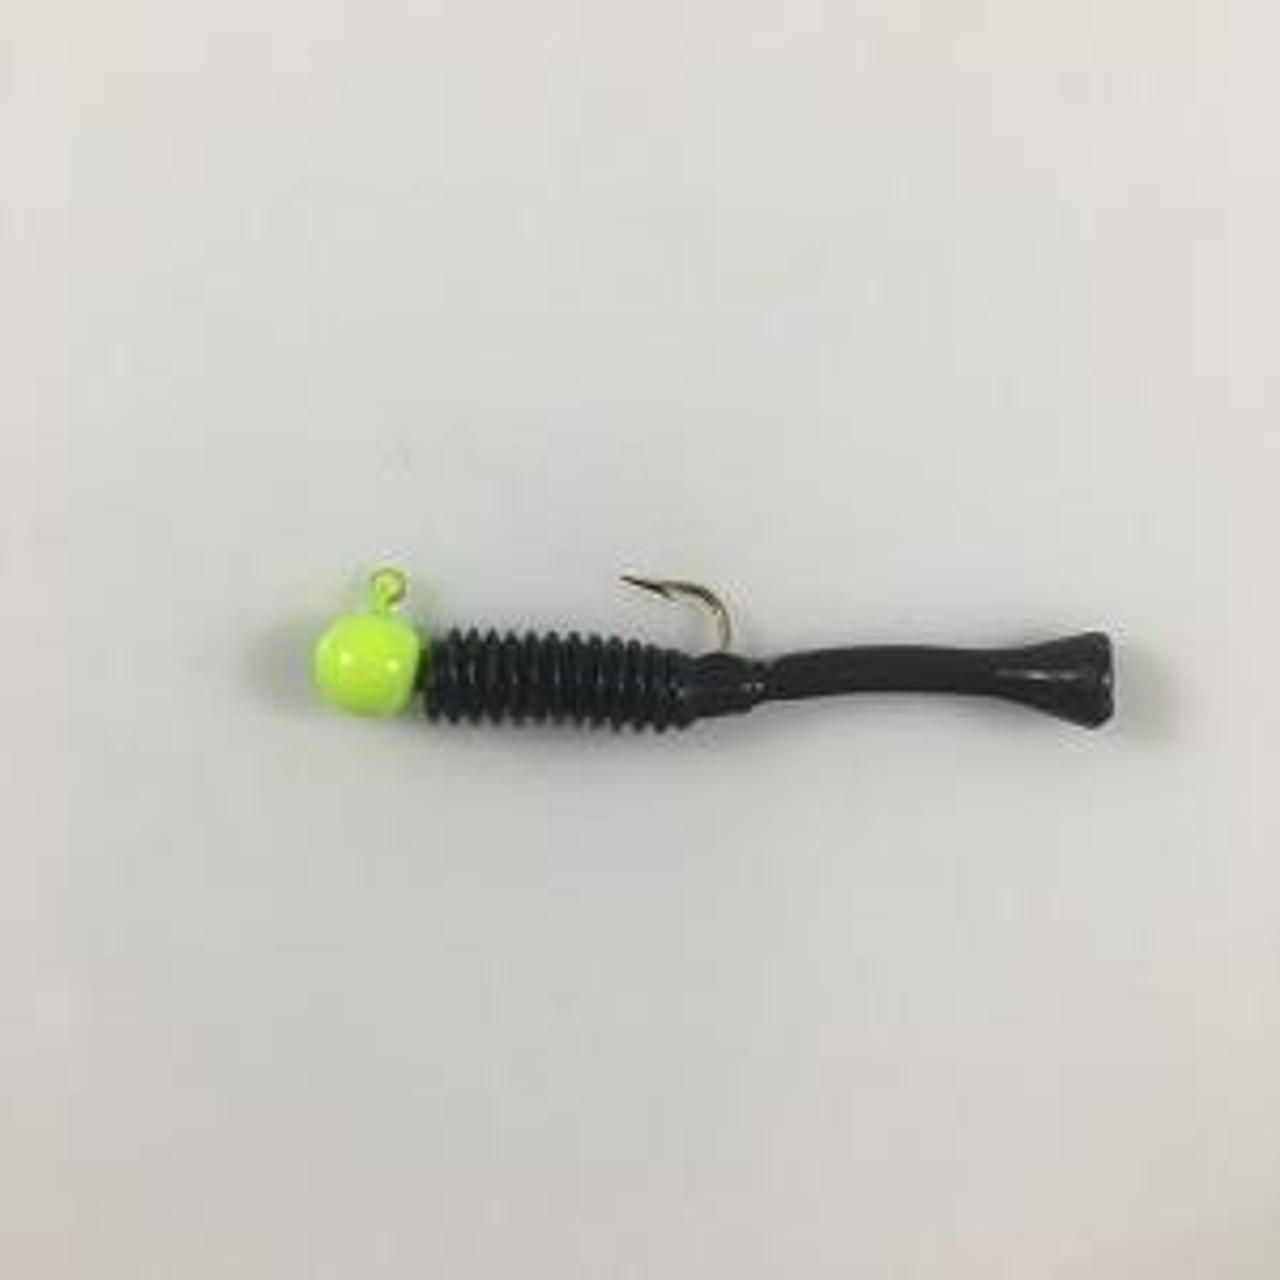 Cubby 5005 Mini-Mite Jig, 1.5, Fishing Jigs 